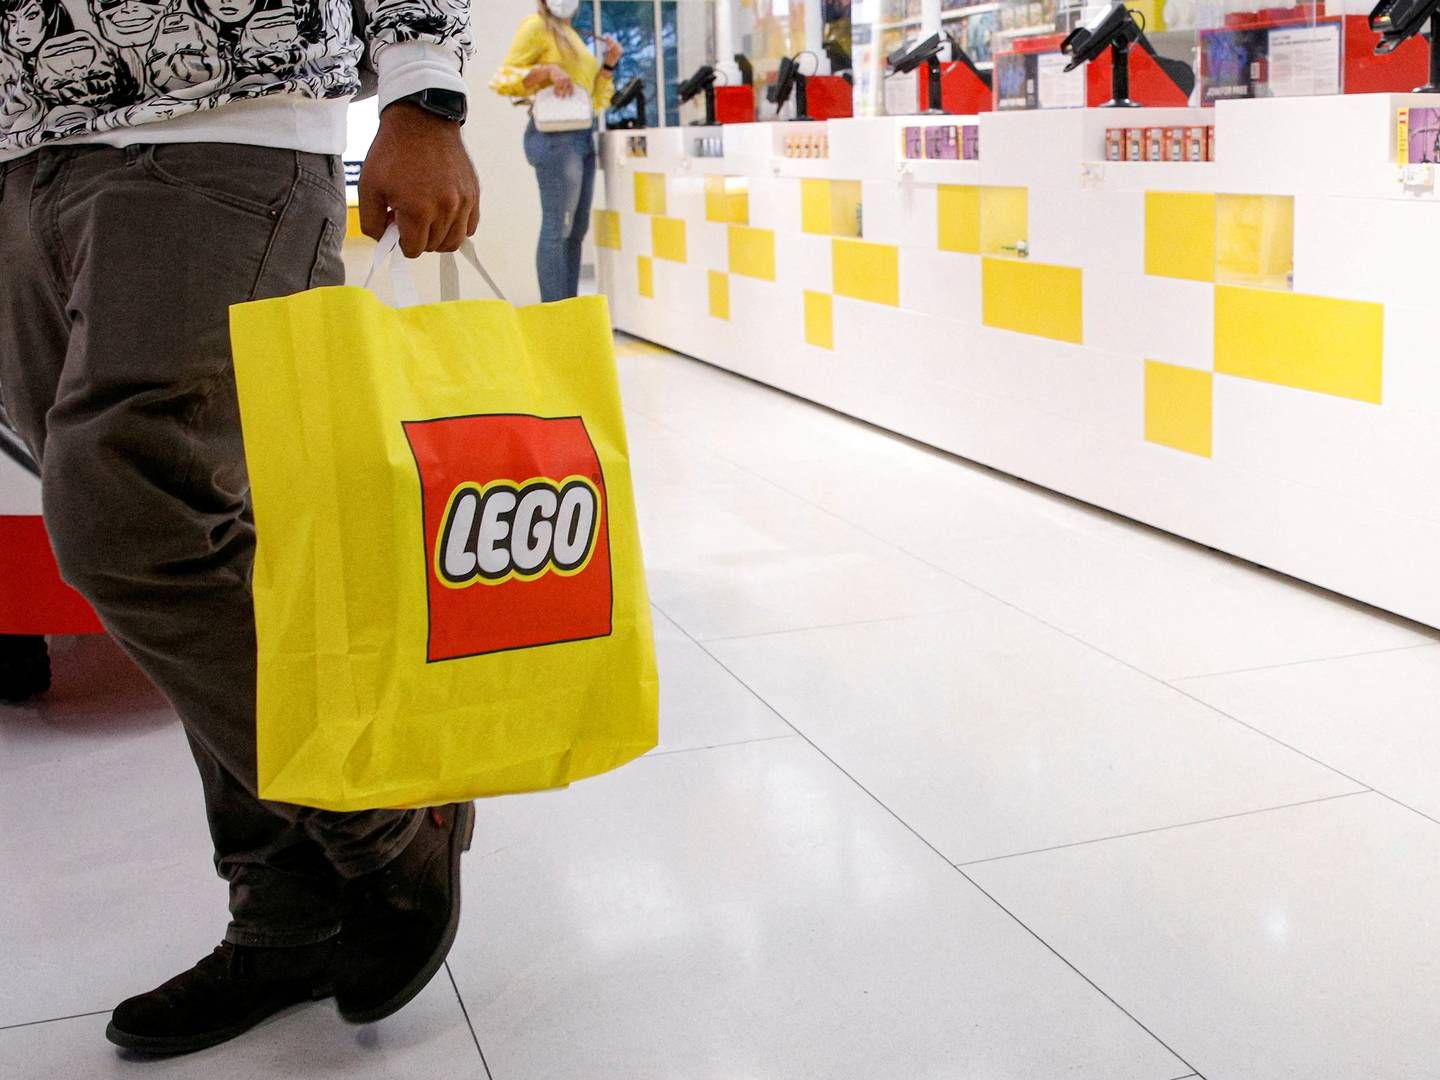 Lego vil udvide butiksnettet i Kina med 80 nye fysiske butikker i år | Foto: BRENDAN MCDERMID/REUTERS / X90143